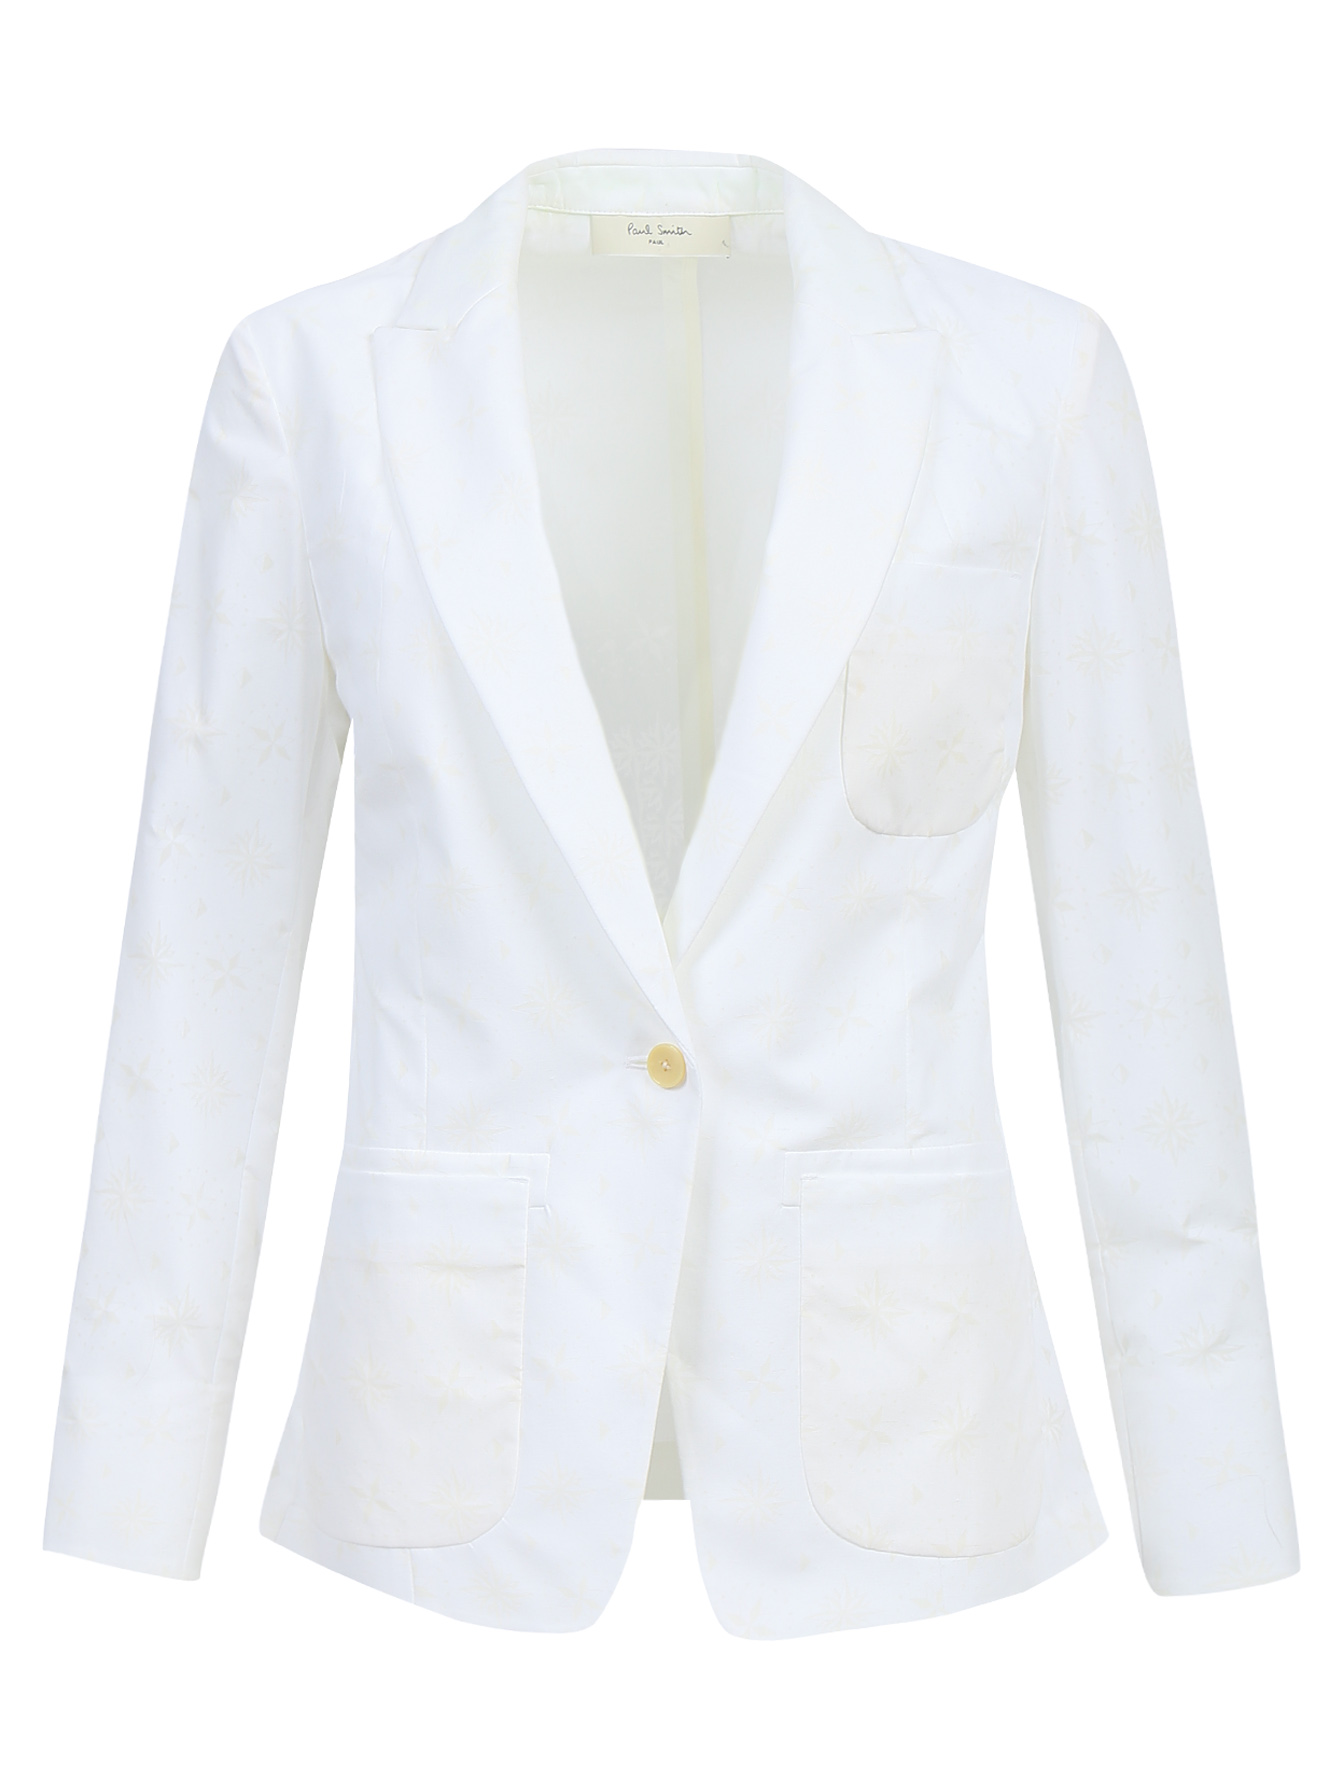 Пиджак летний хлопок. MARCCAIN Sports белый жакет пиджак YS 34.16 j70 15642.1. Пиджак жакет Dior Kids белый. Armani Exchange белый пиджак женский.